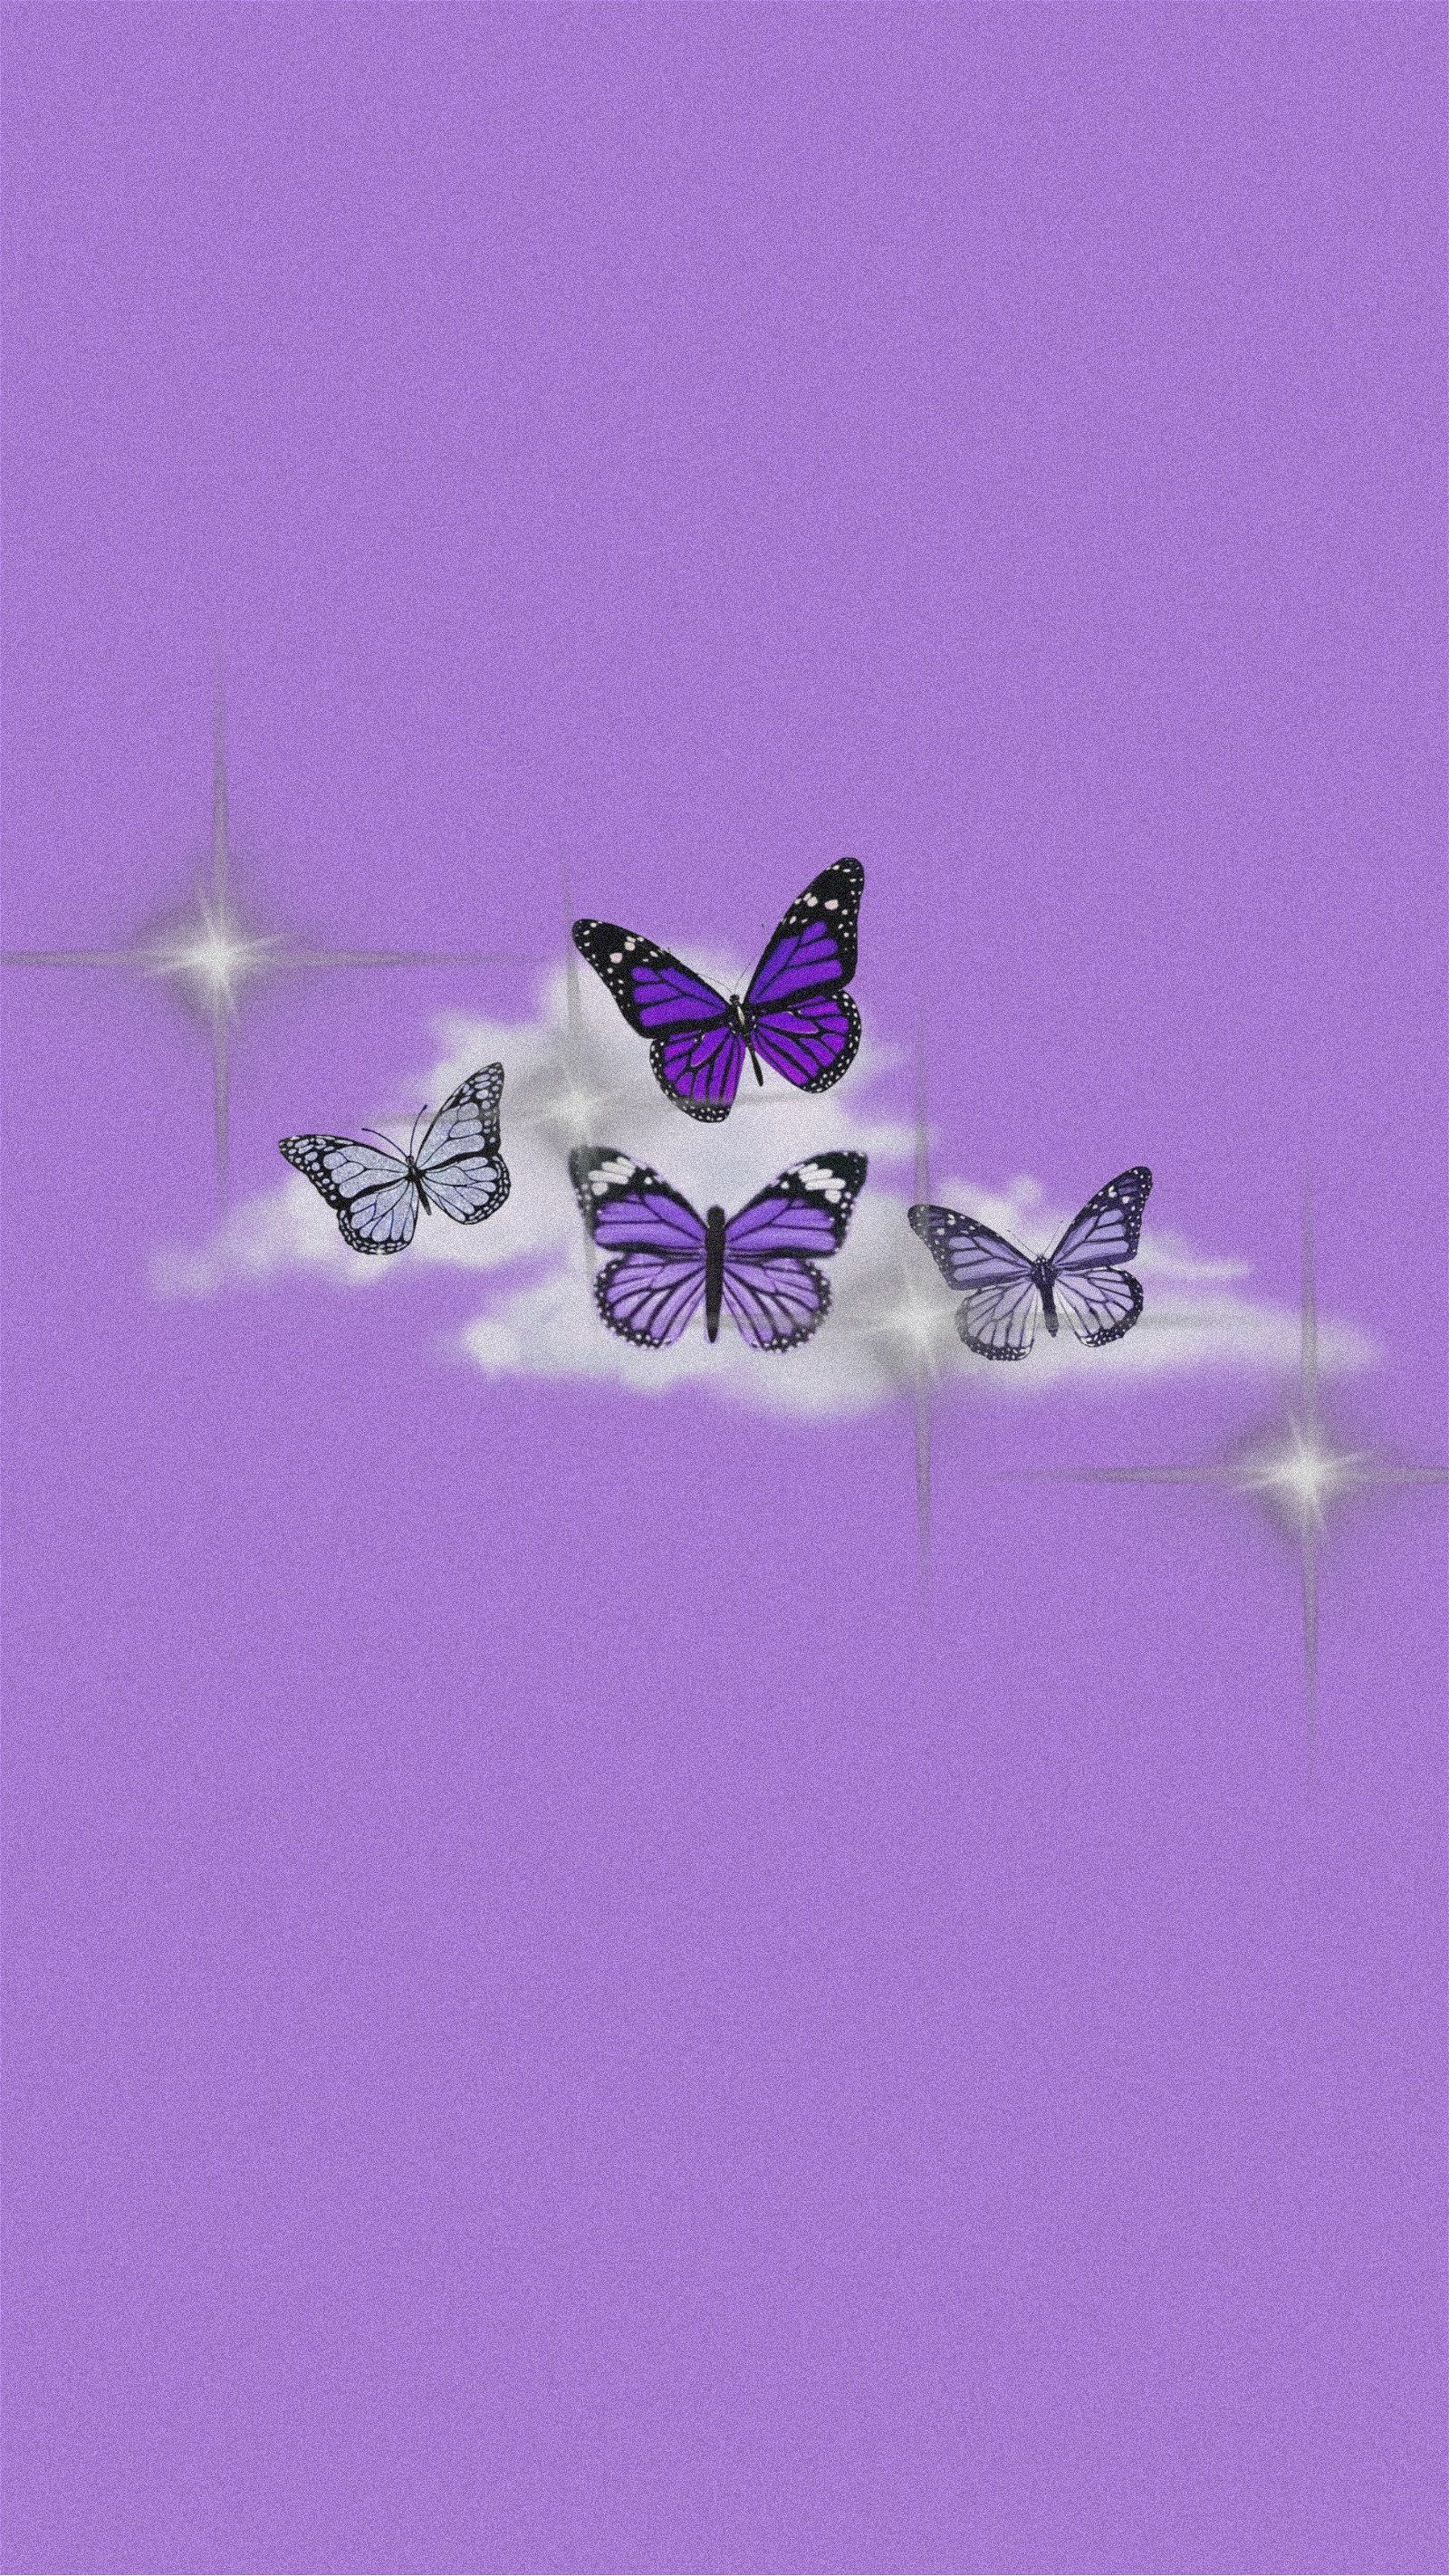 Four purple butterflies on a purple background - Butterfly, cute purple